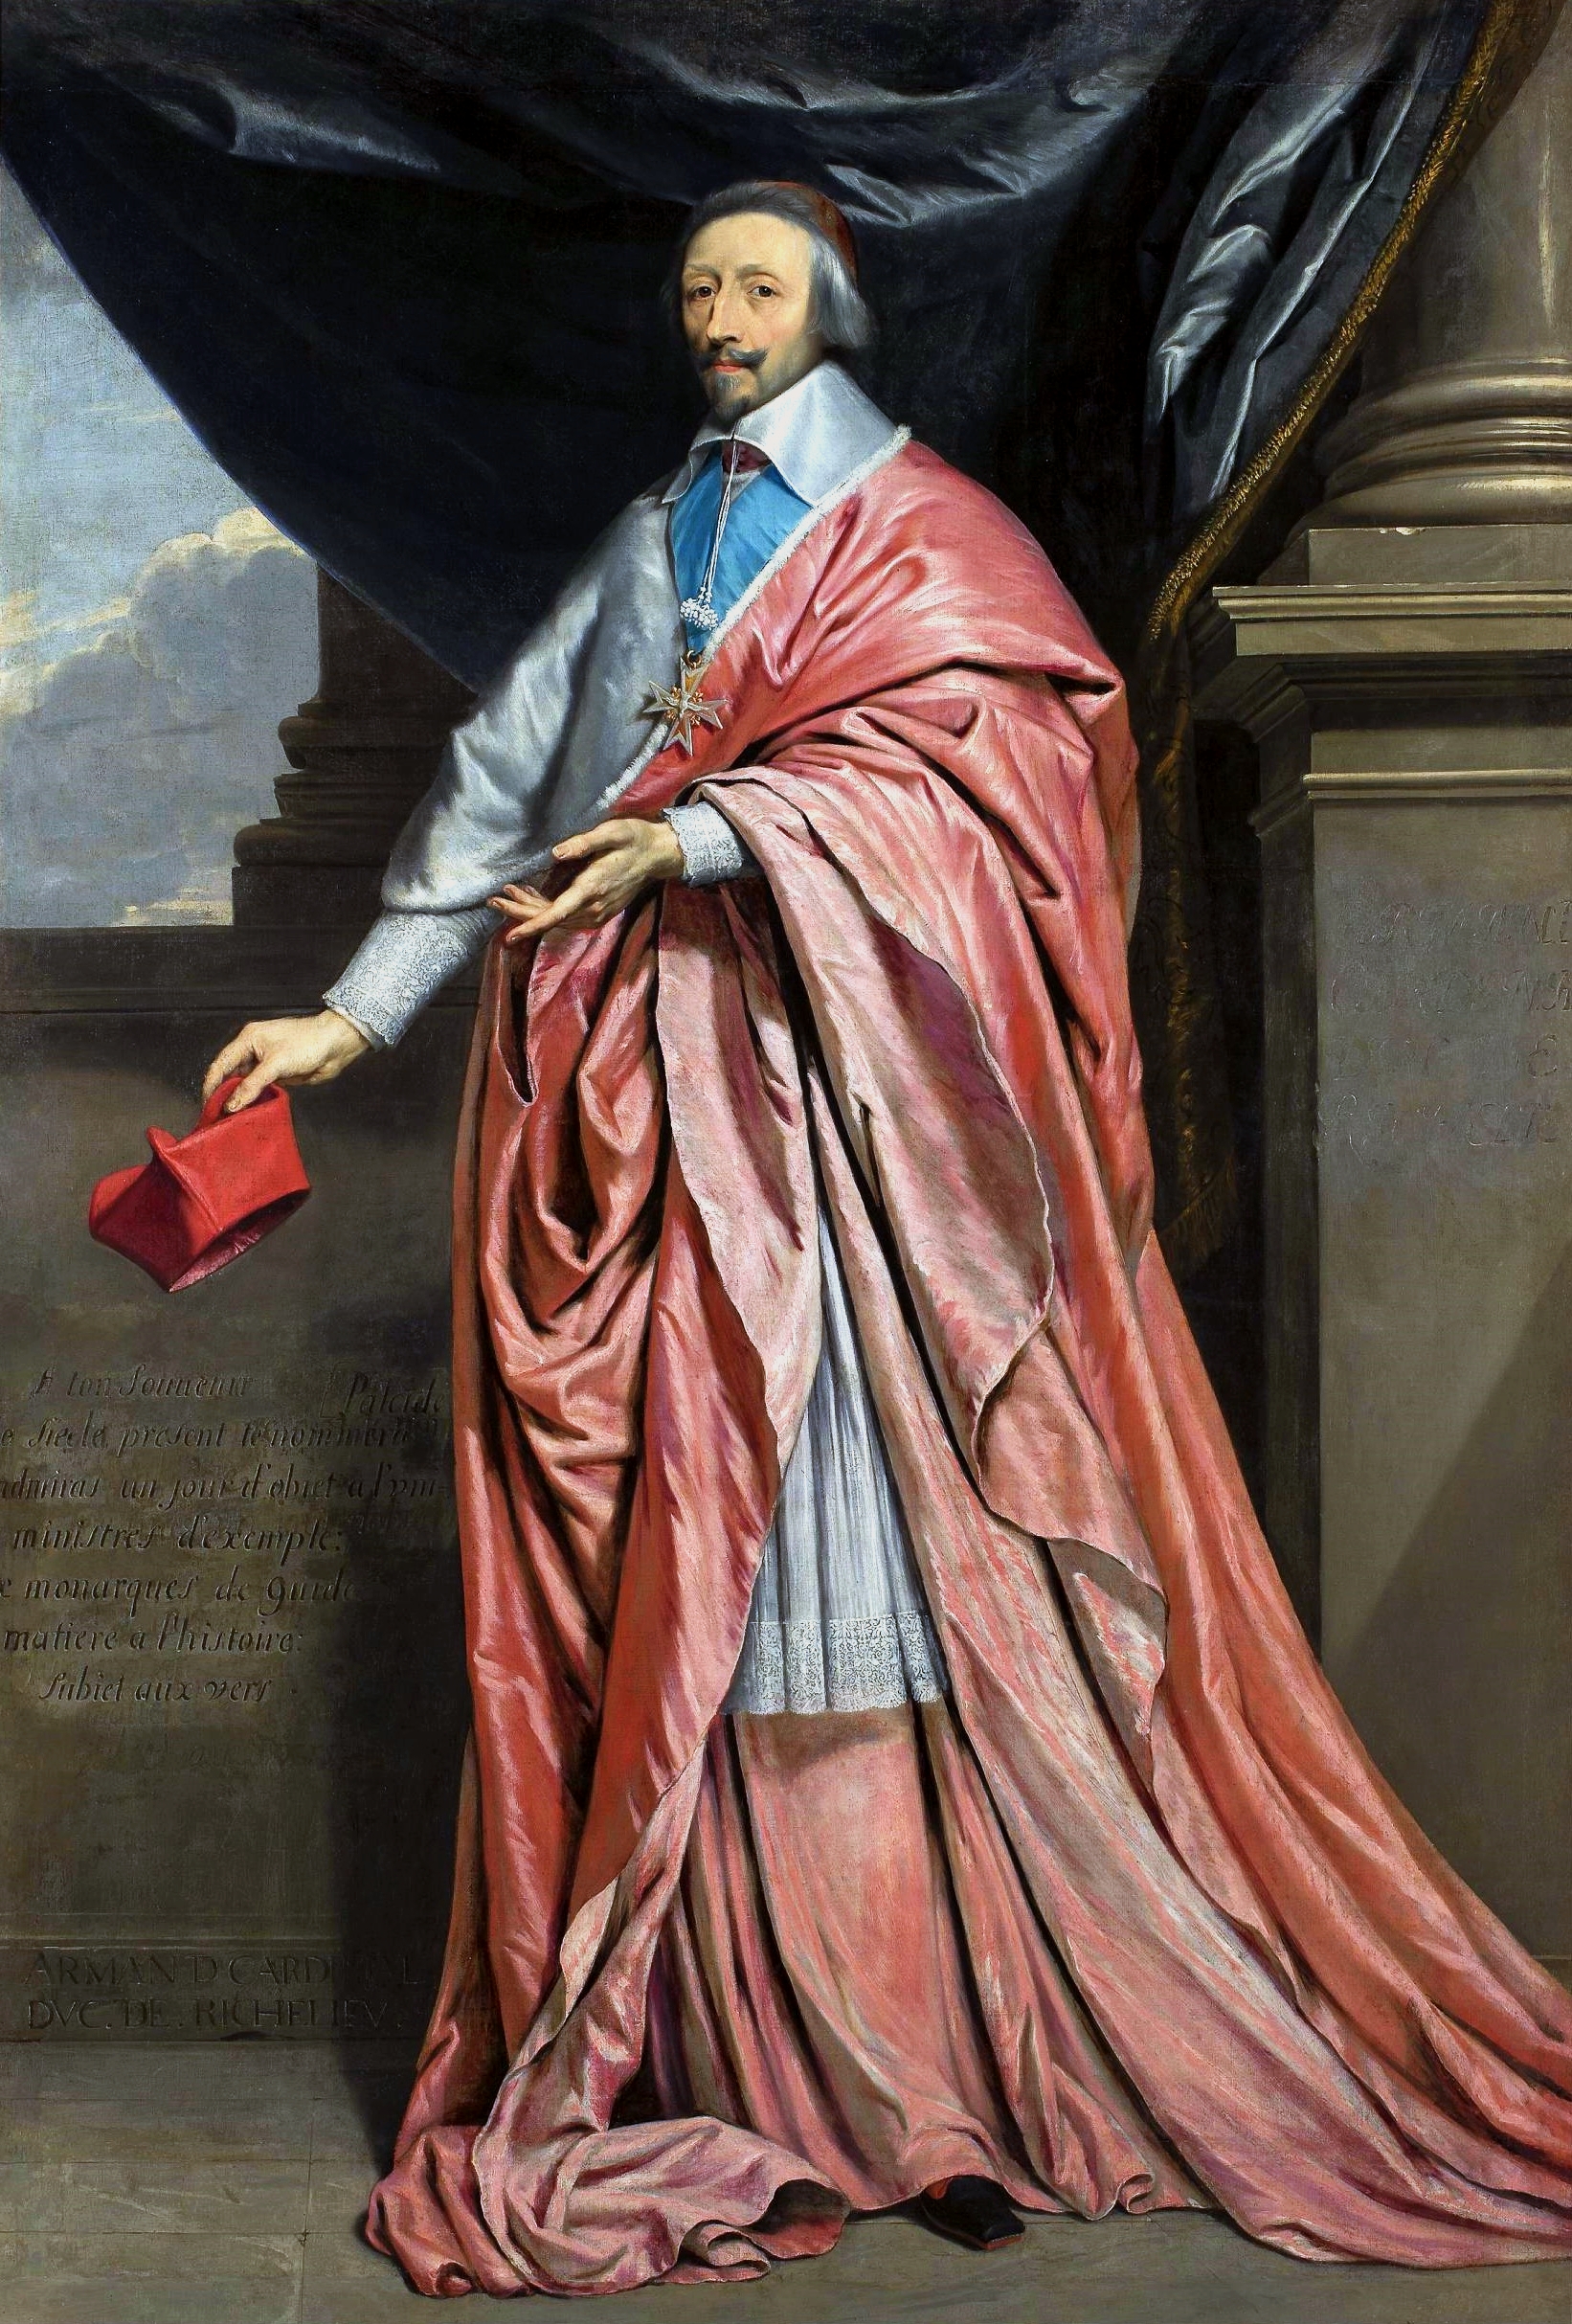 Retrato do Cardeal Richelieu by Philippe de Champaigne - à volta de 1640 - 225 × 156 cm 